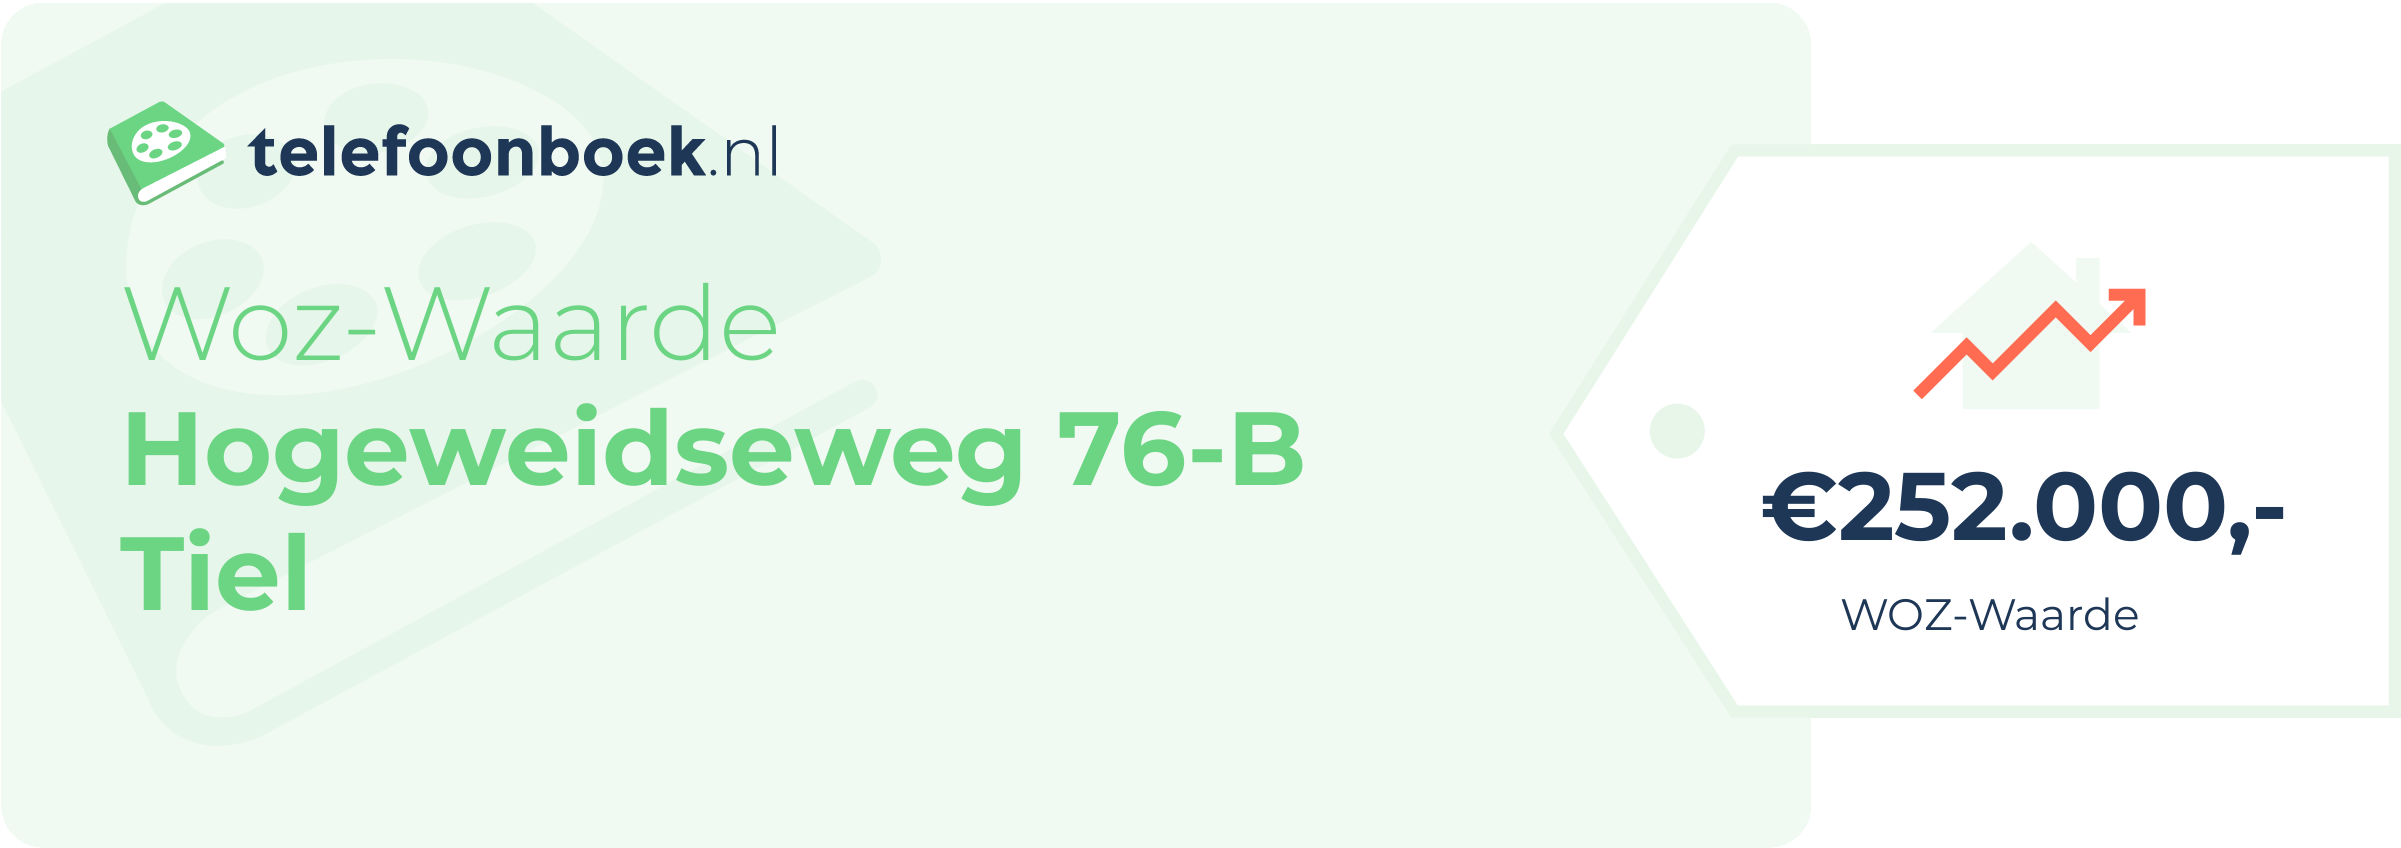 WOZ-waarde Hogeweidseweg 76-B Tiel